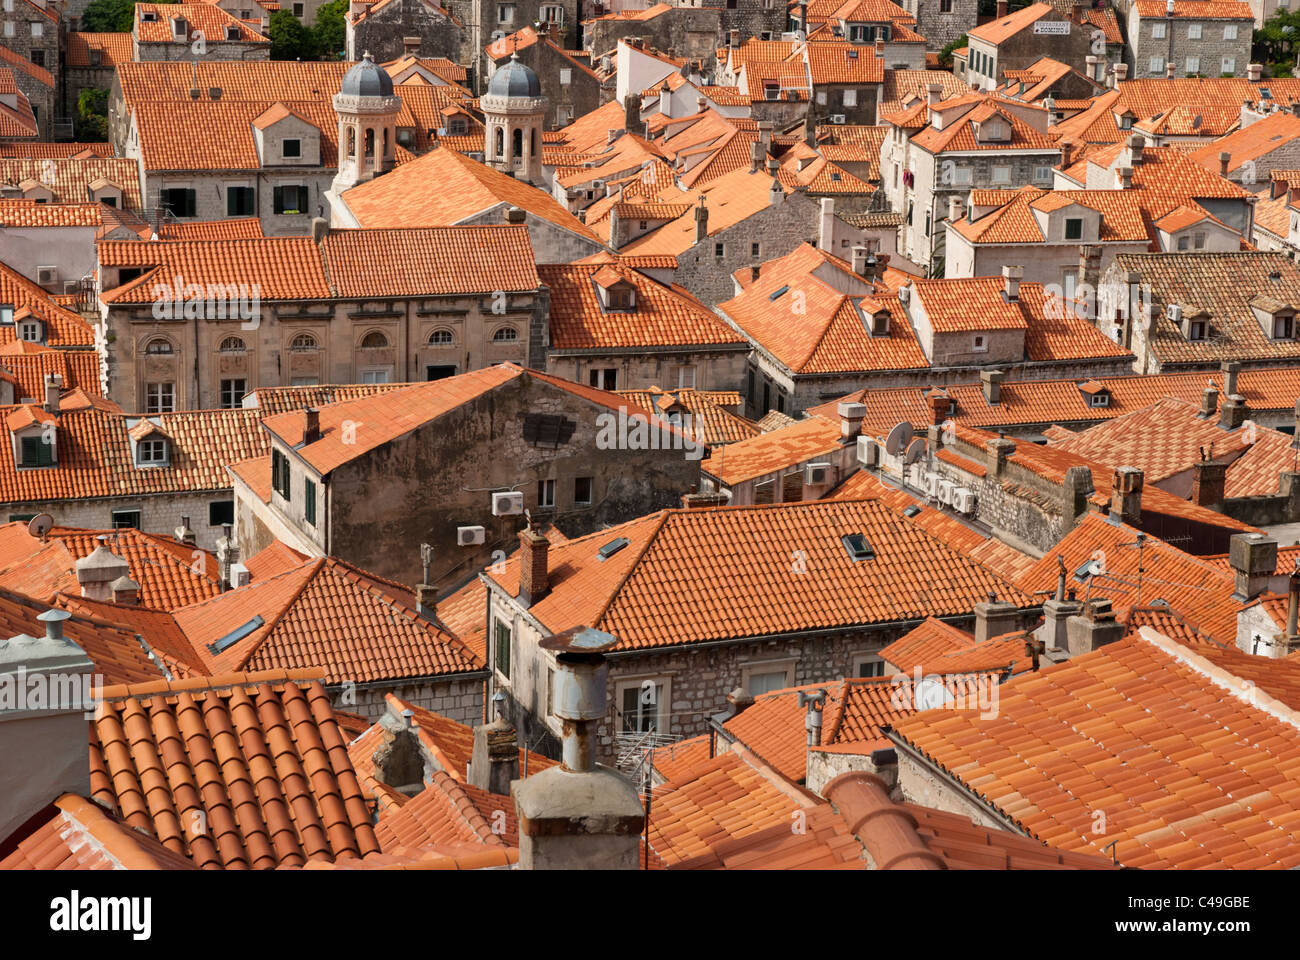 Le célèbre orange toits des bâtiments dans la vieille ville, Dubrovnik, Croatie. Toits plus signifier de nouveaux après la guerre des Balkans. Banque D'Images